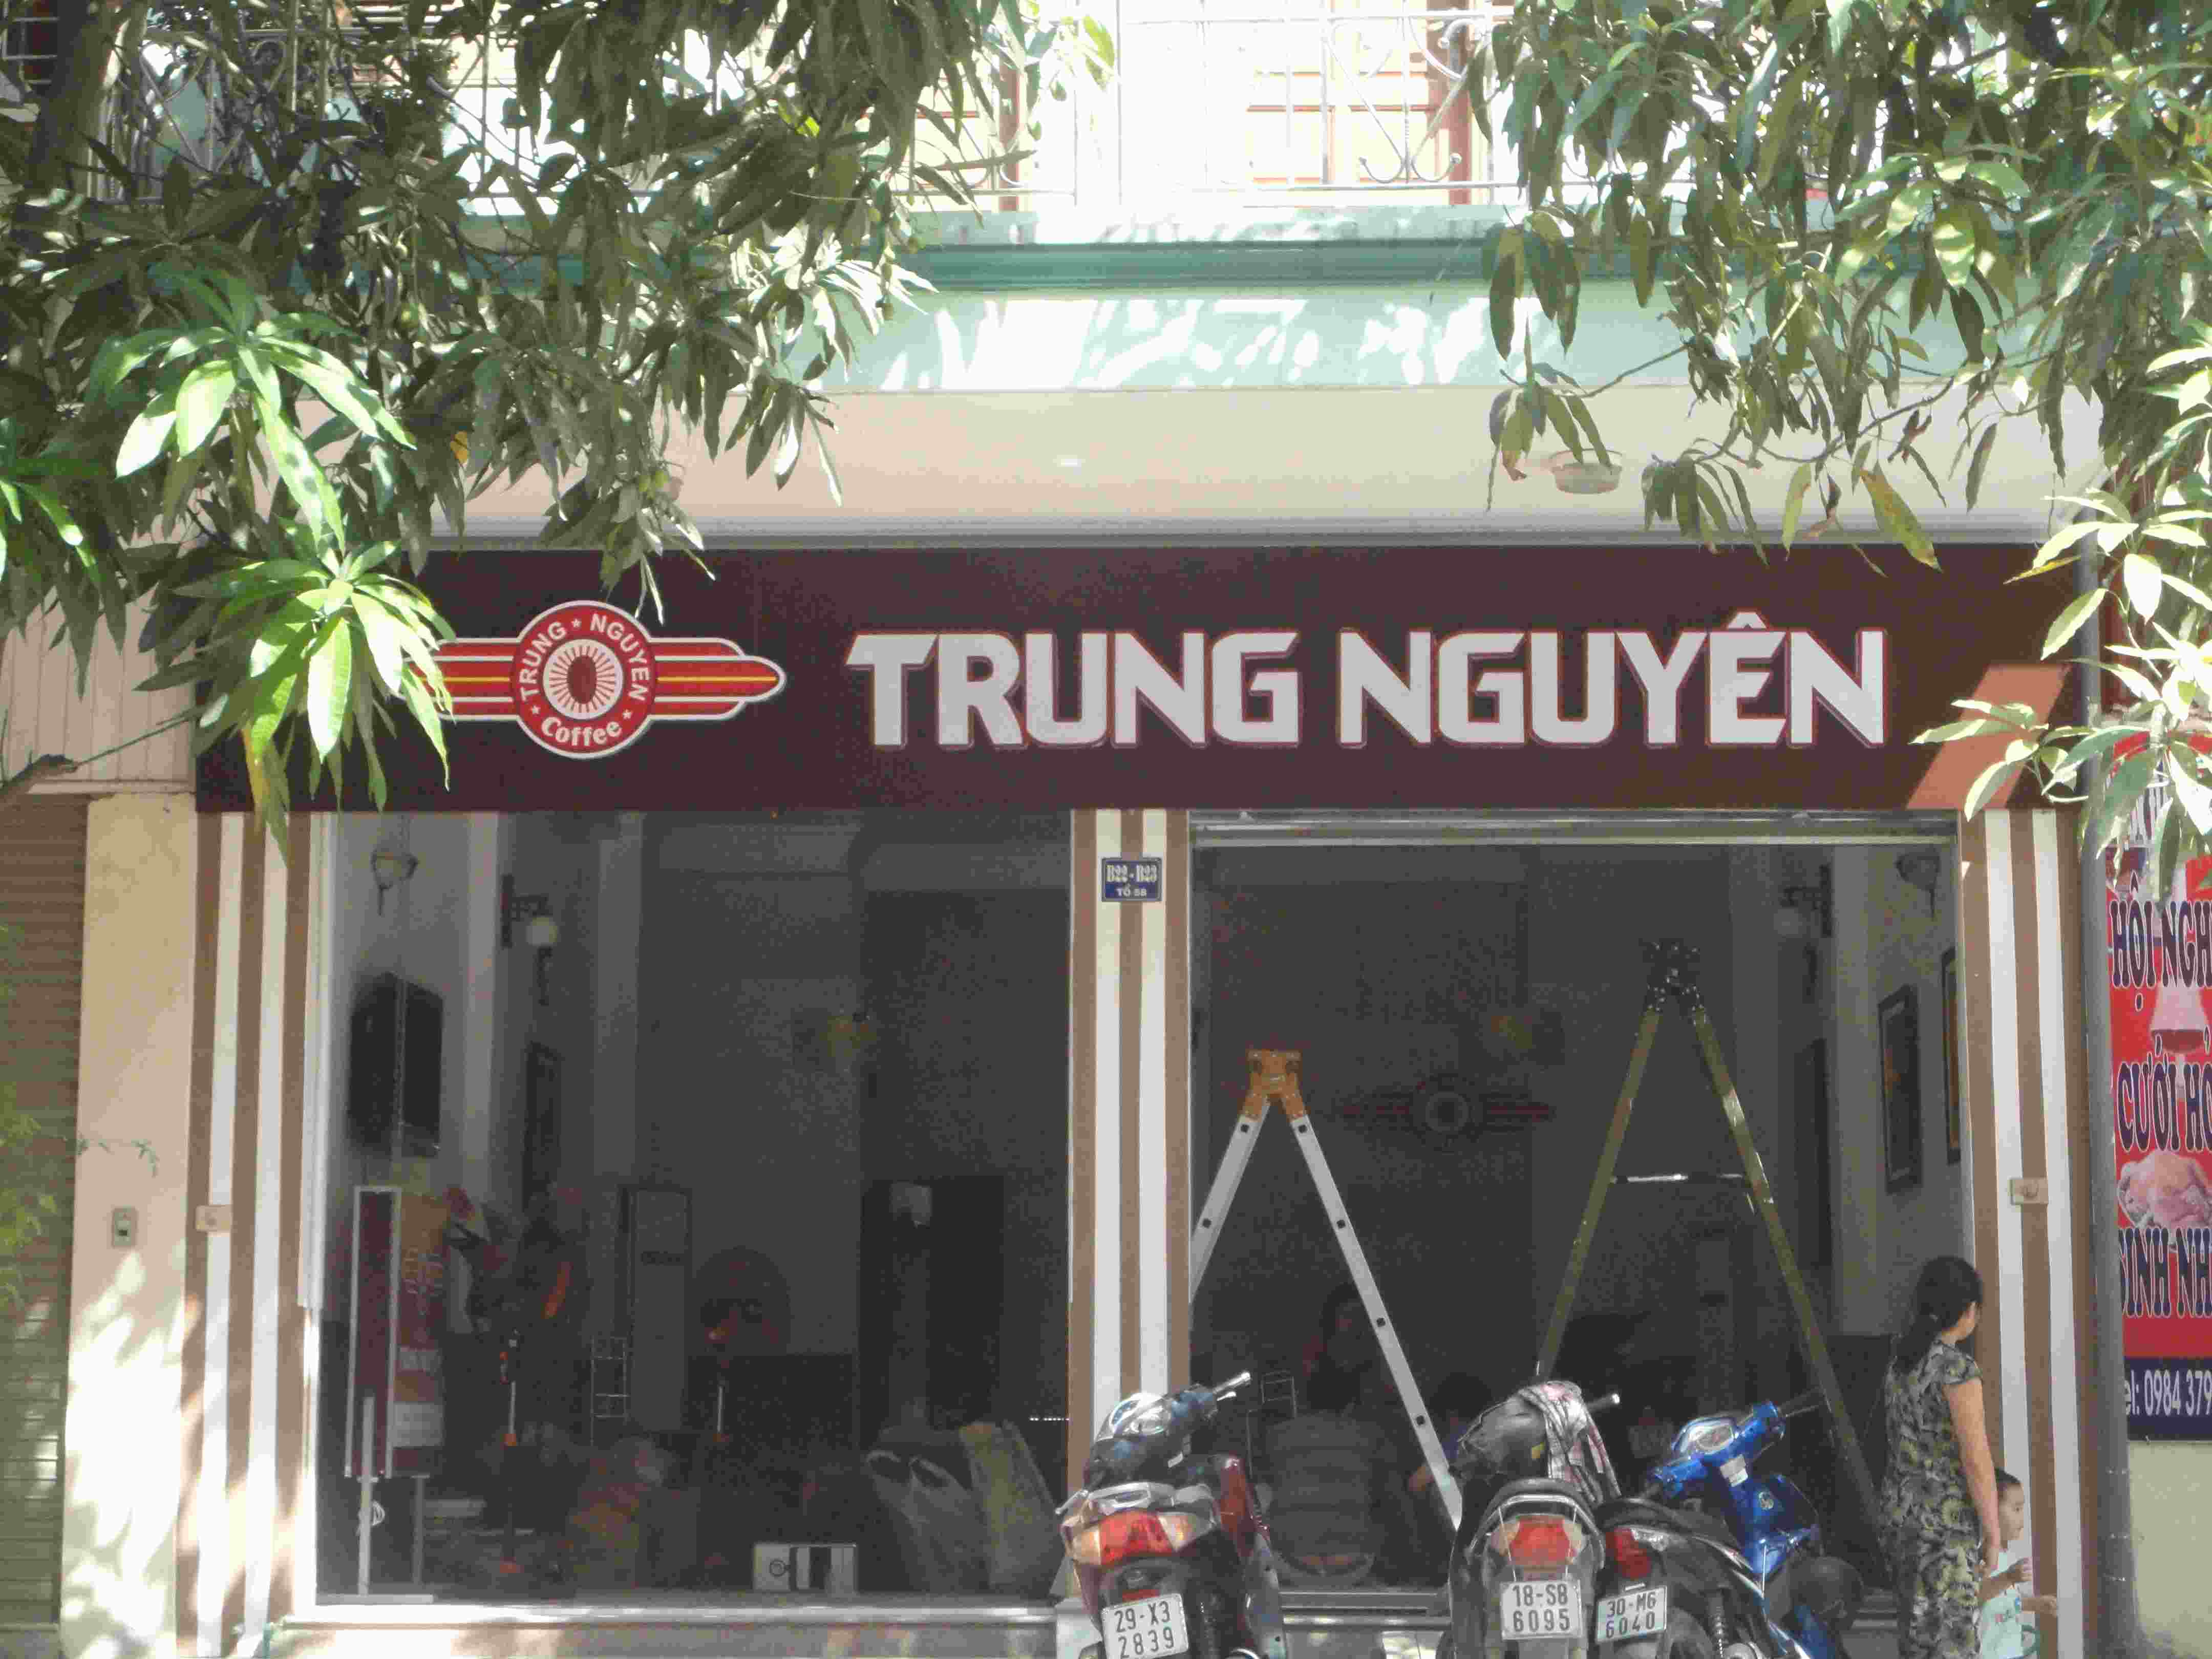 Biển hiệu - cafe Trung Nguyên Công ty TNHH thương mại Siêu Led Việt